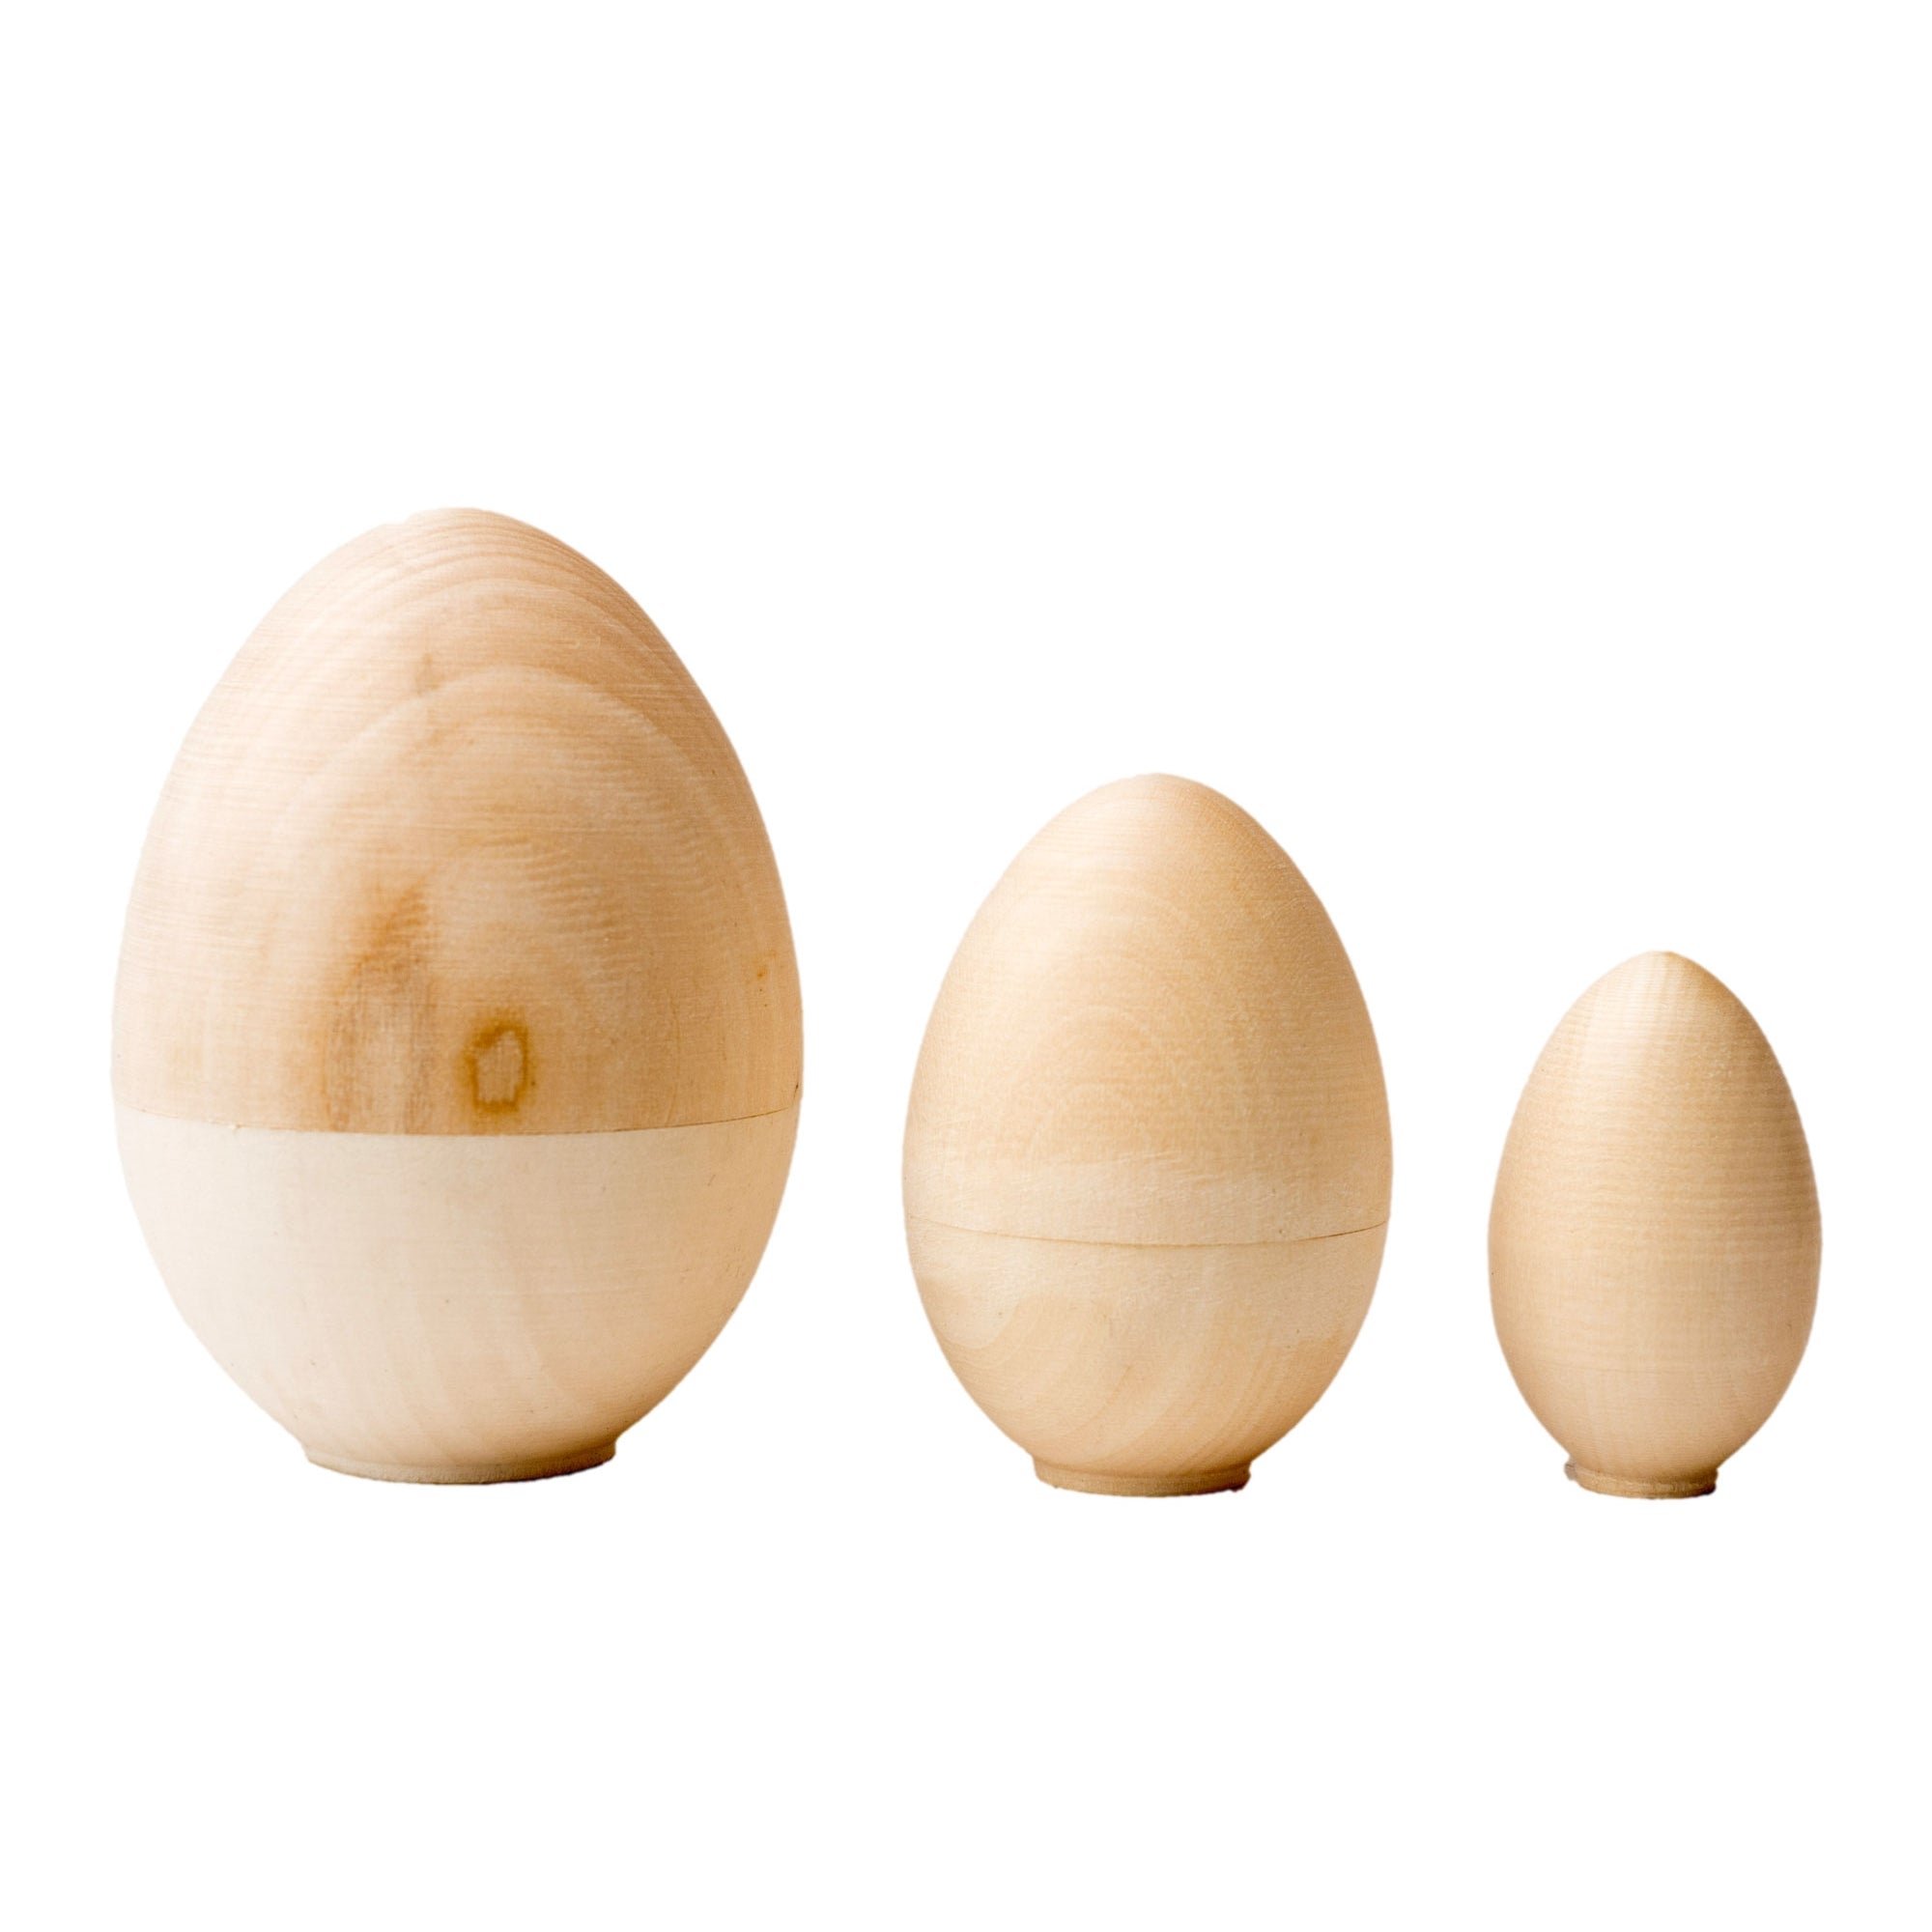 Blank Wooden Nesting Egg